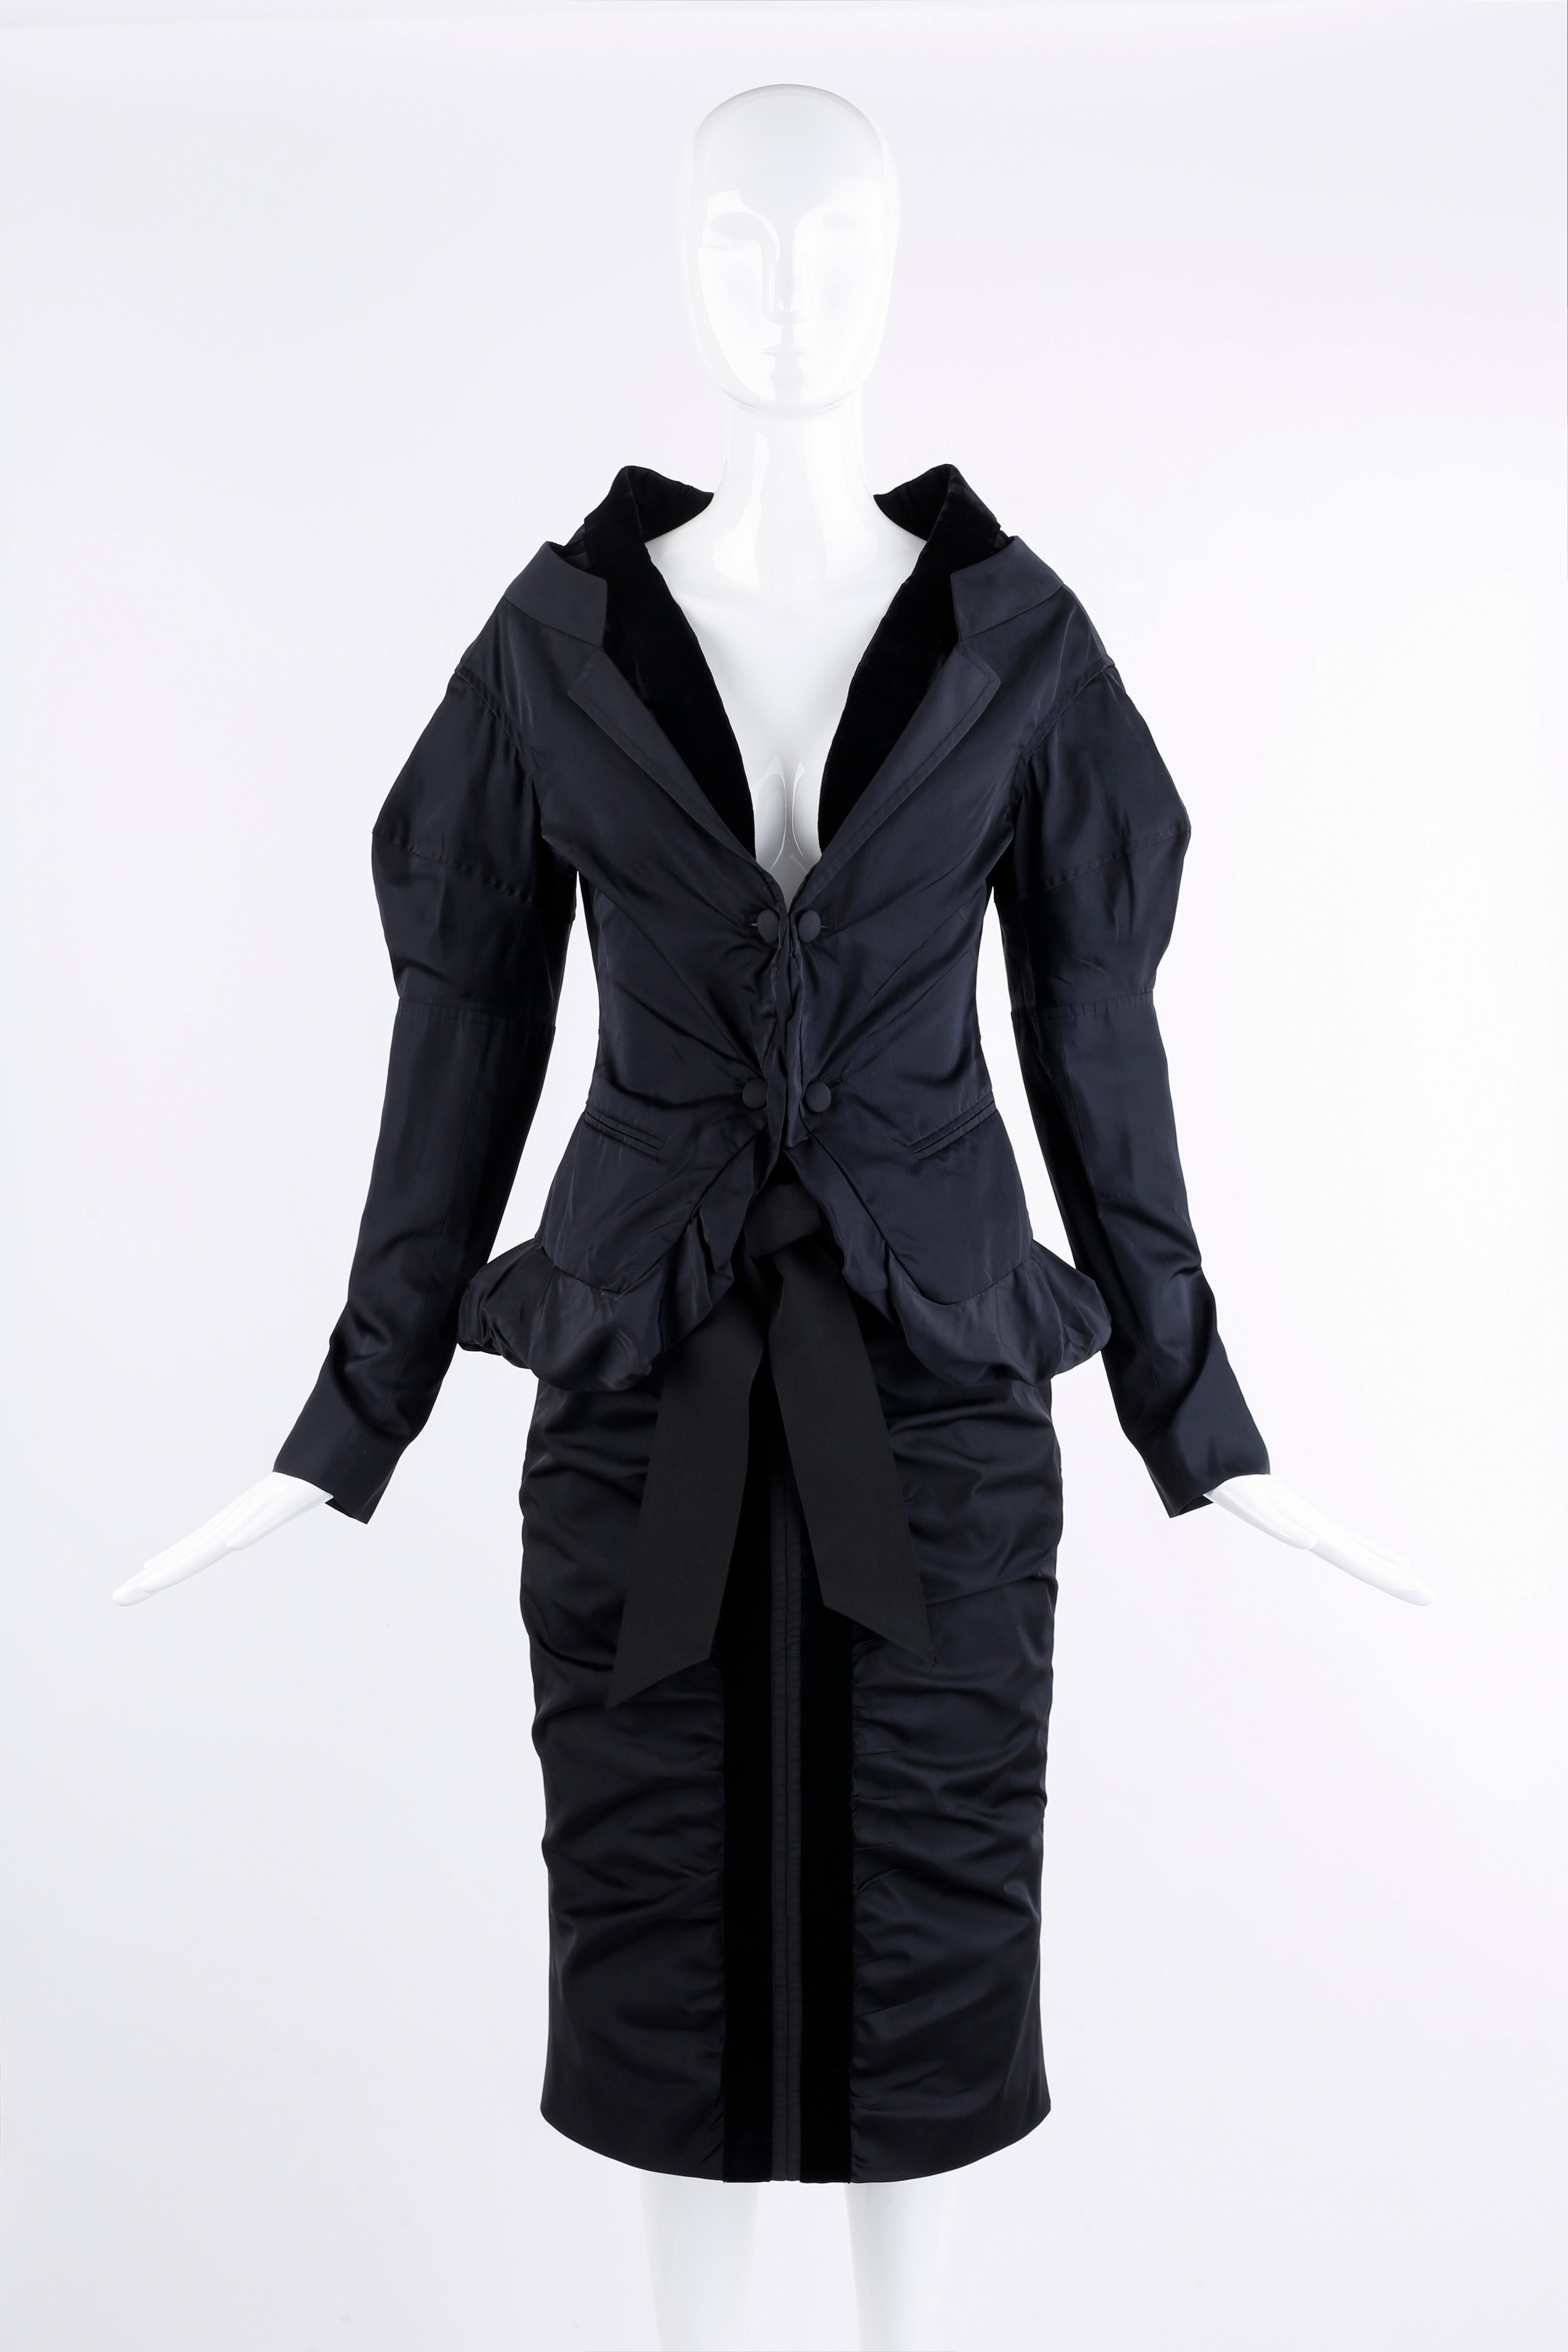 Noir Yves Saint Laurent par Tom Ford, tailleur jupe et veste de soirée en soie noire, A/H 2002 en vente